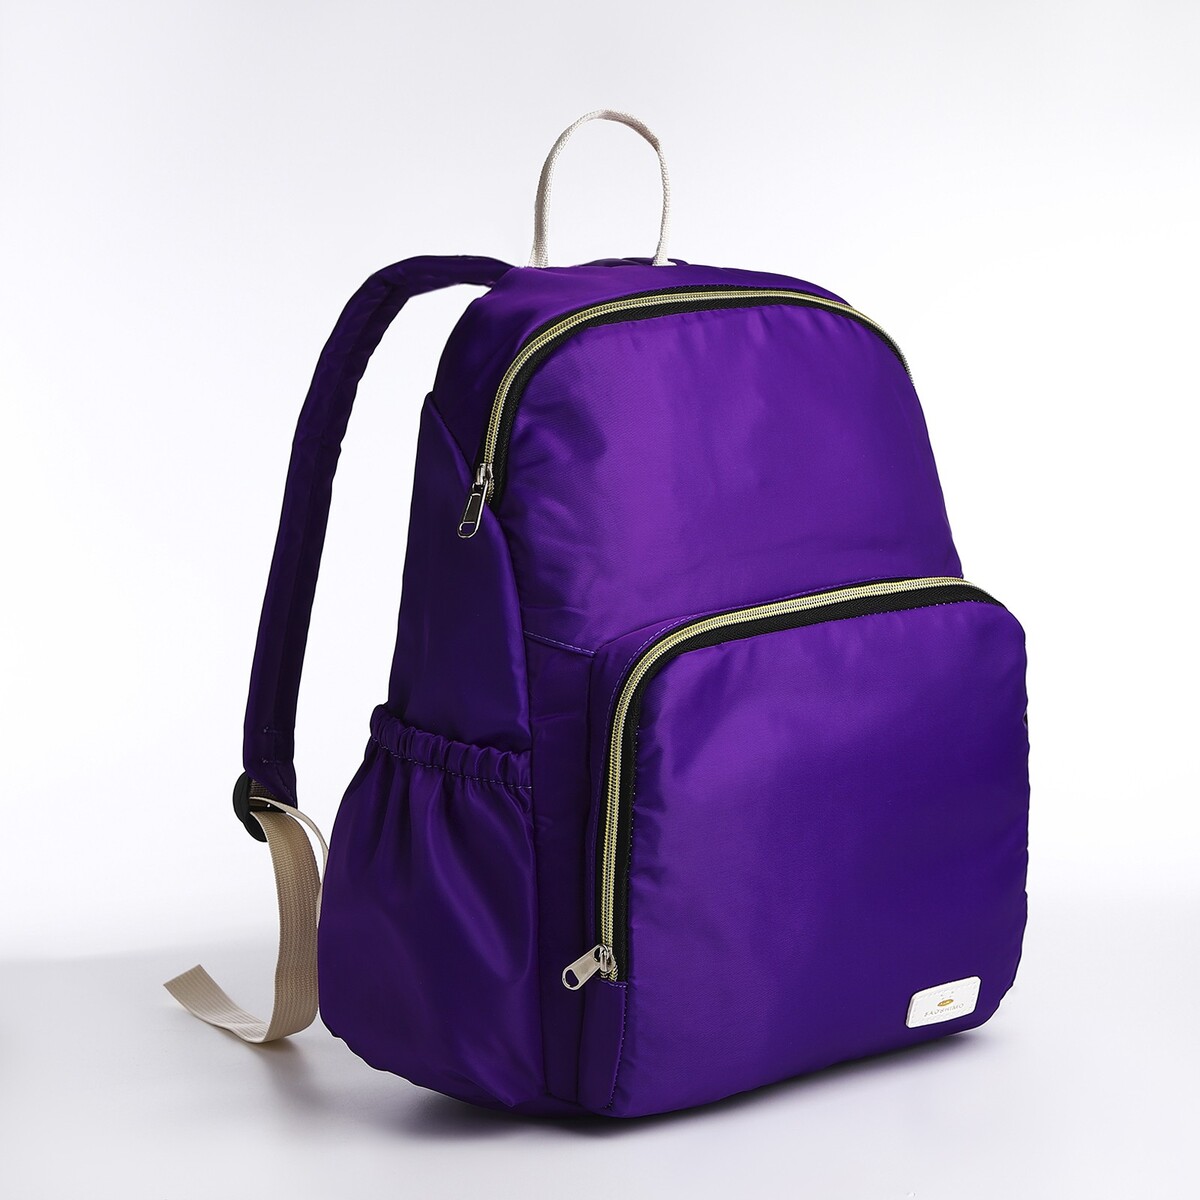 Рюкзак на молнии, цвет фиолетовый рюкзак kingkong i 30 wb 9064 черн средний фоторюкзак